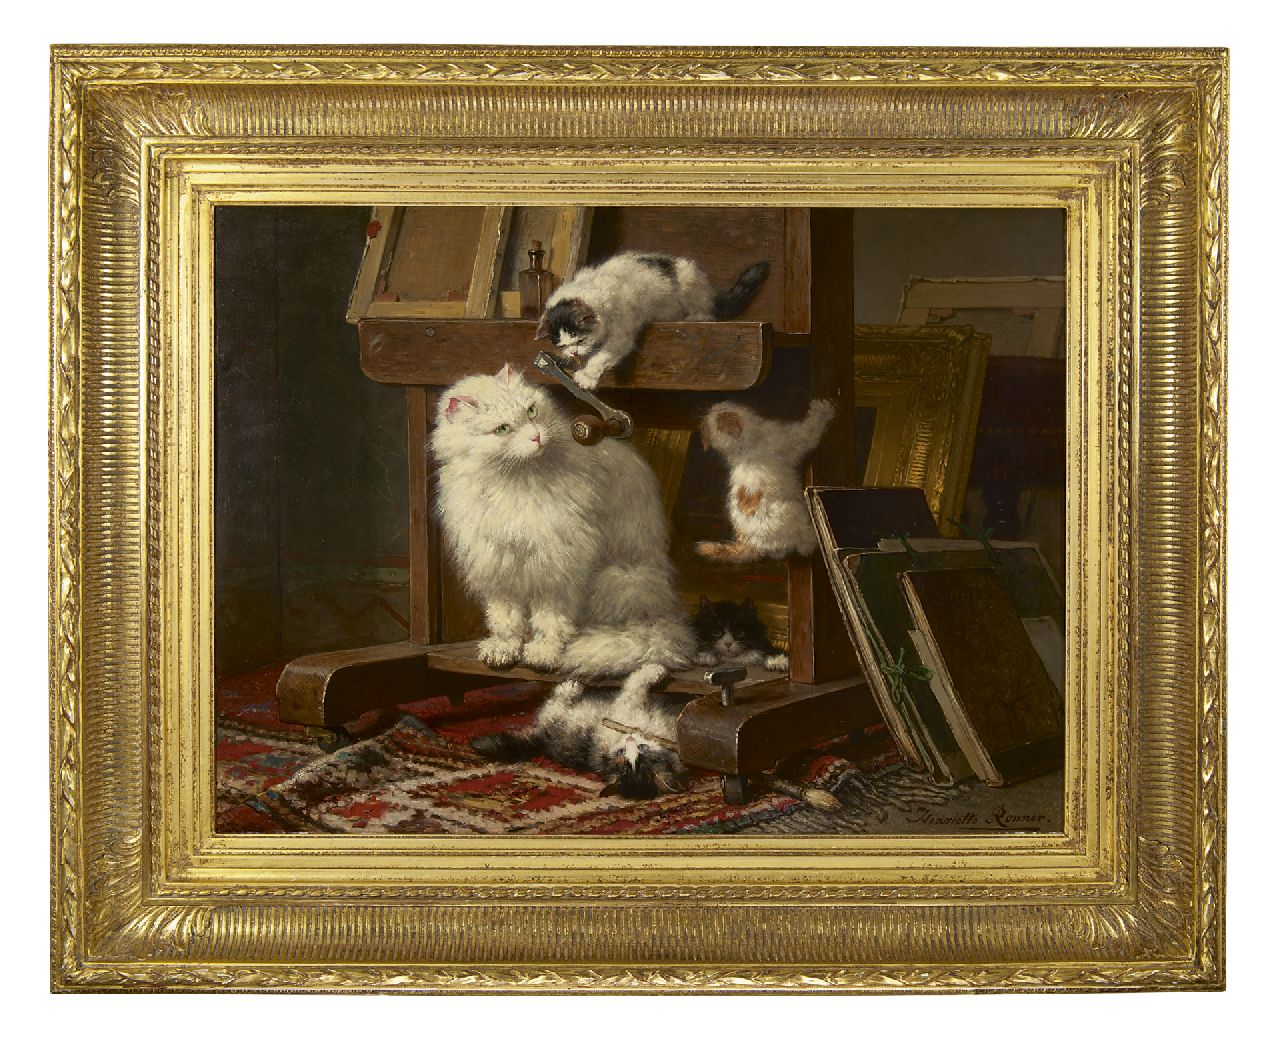 Ronner-Knip H.  | Henriette Ronner-Knip, Poezenfamilie in het atelier, olieverf op paneel 54,5 x 72,0 cm, gesigneerd rechtsonder en gedateerd 1878